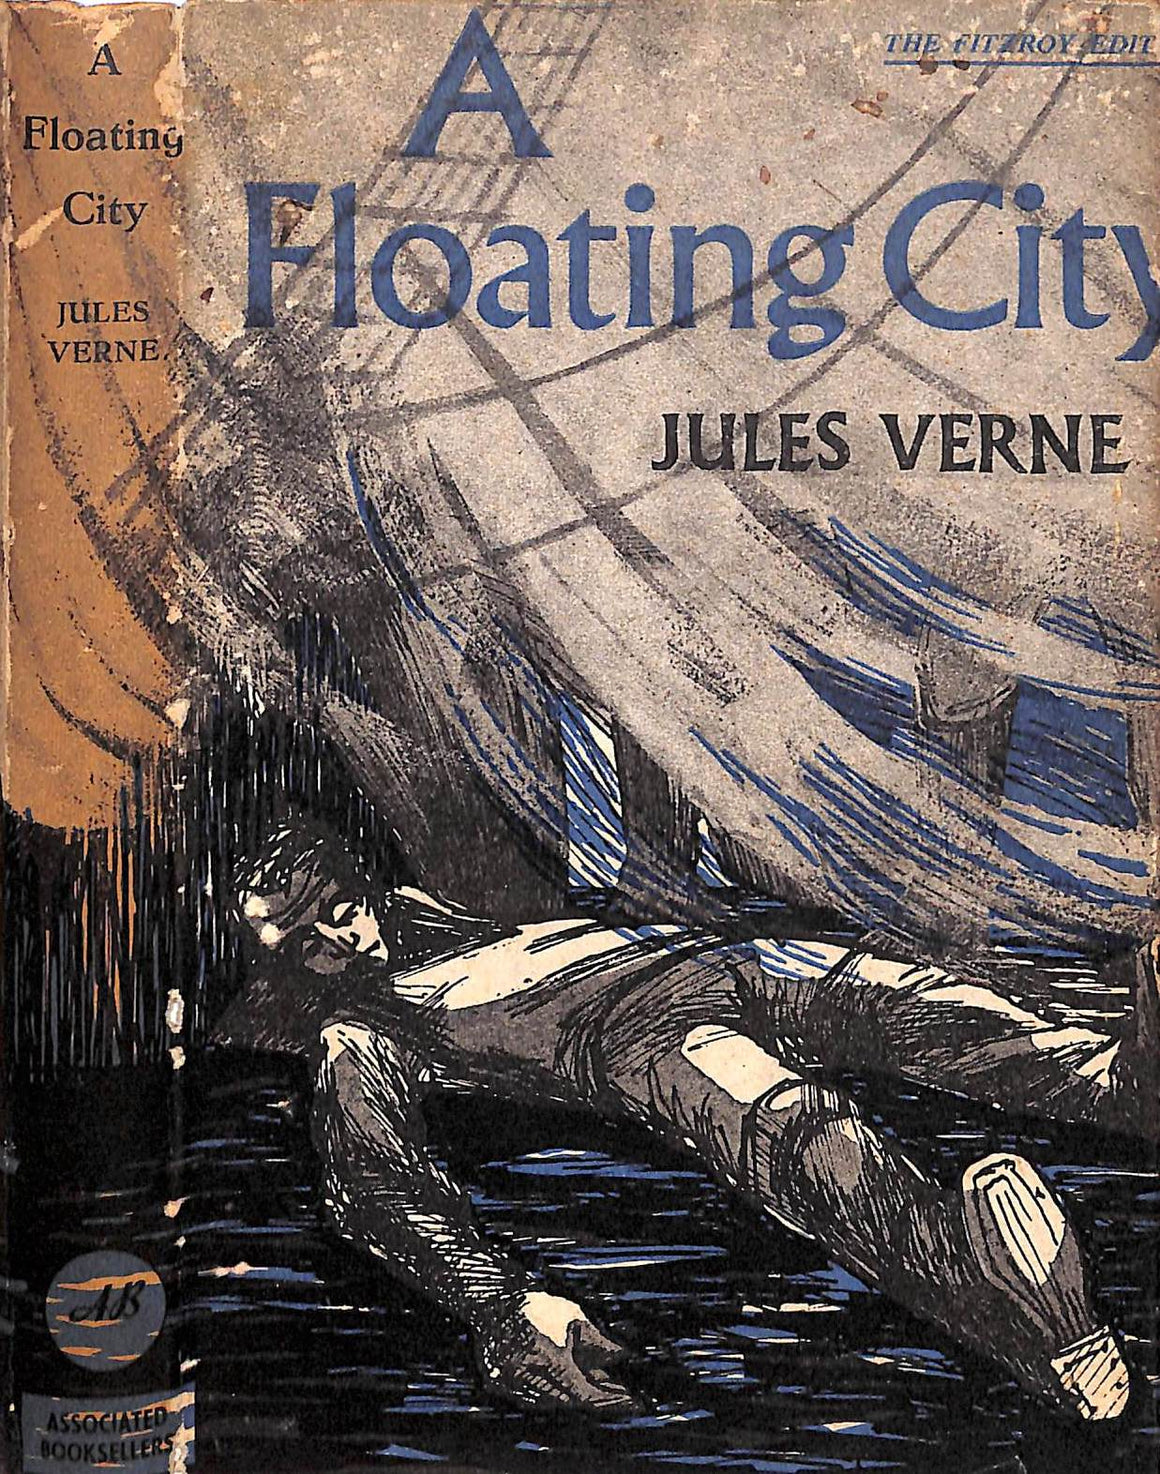 "A Floating City" 1958 VERNE, Jules